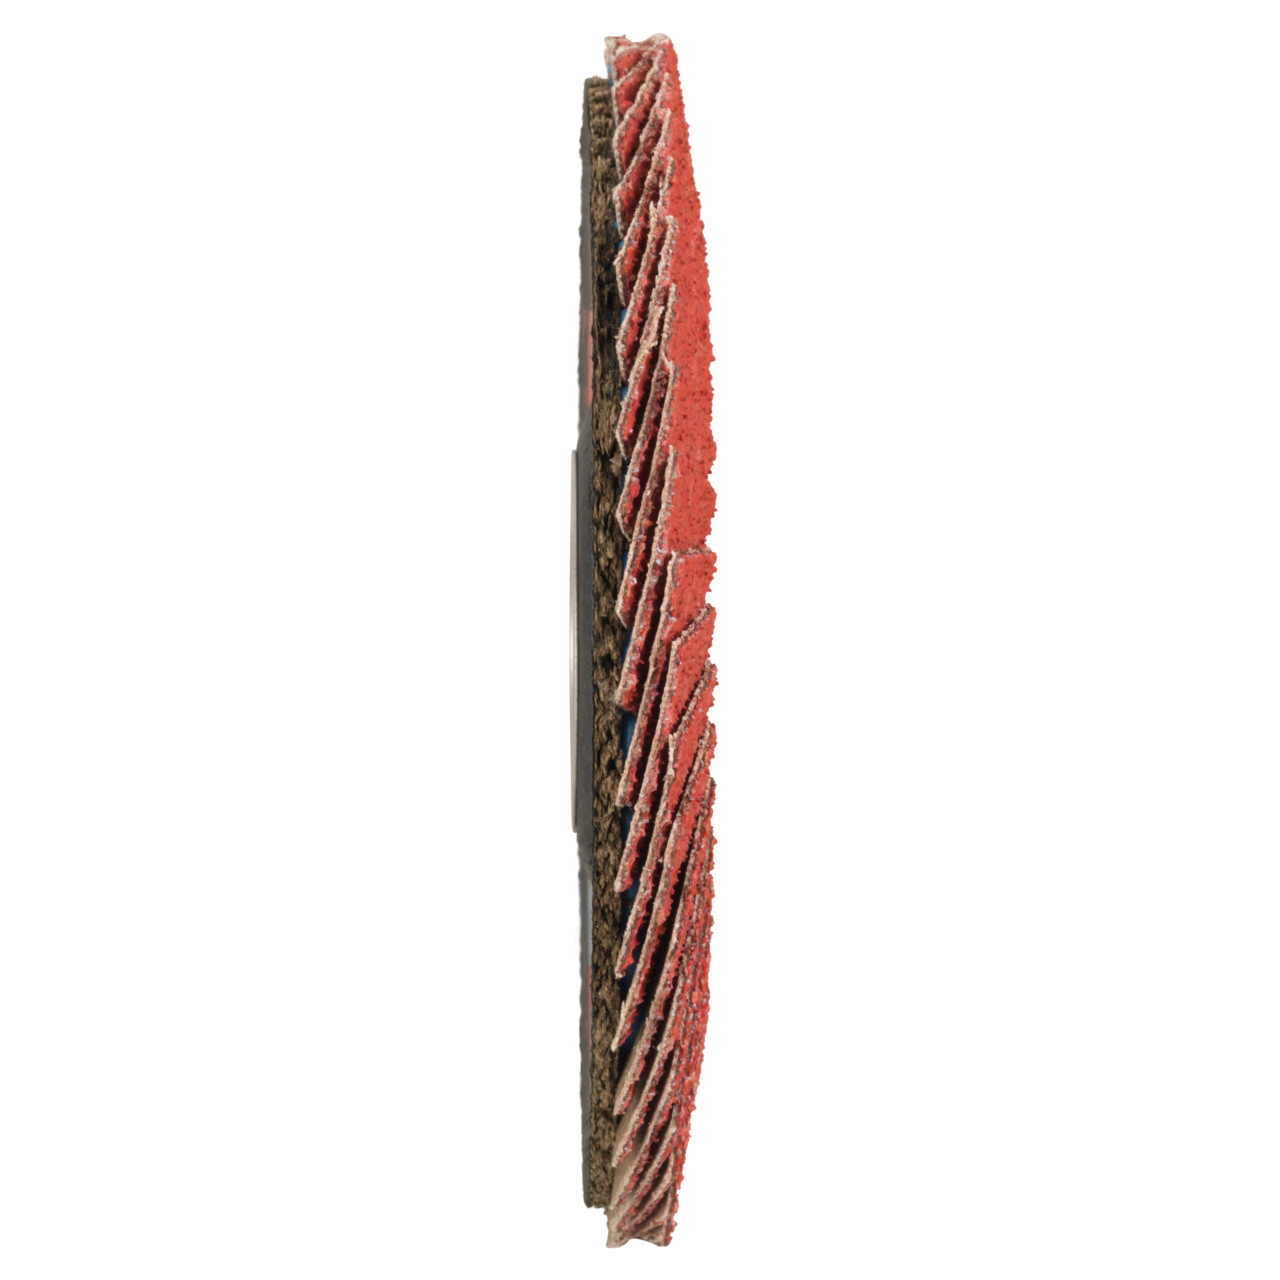 Tyrolit Getande borgring DxH 125x22,2 CERAMIC voor roestvrij staal, P60, vorm: 27A - offset ontwerp (glasvezeldrager huis ontwerp), Art. 645137